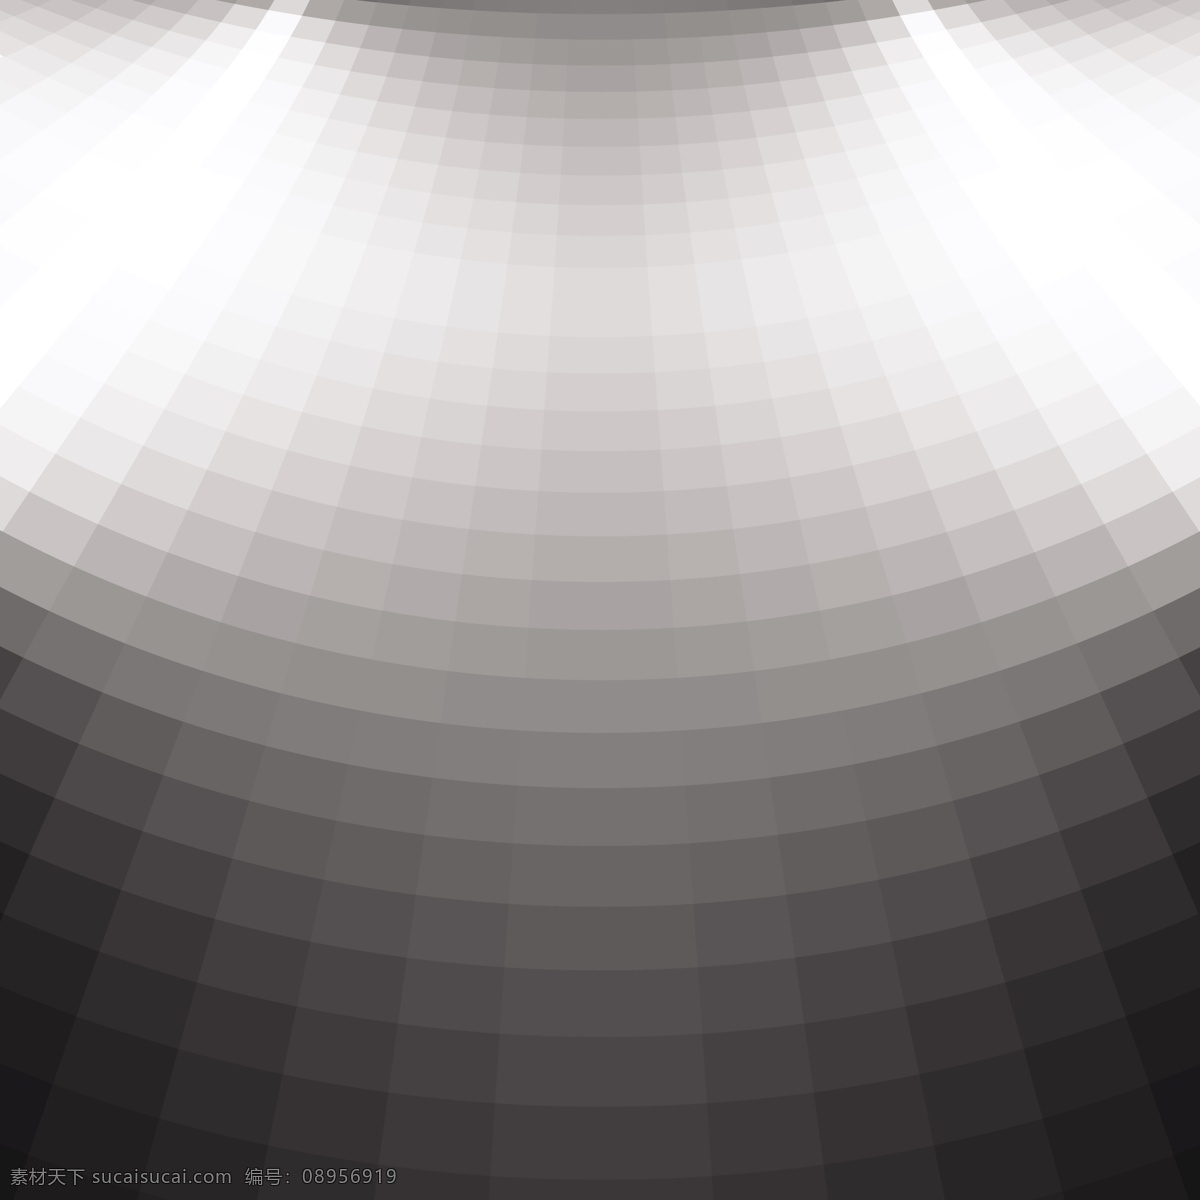 黑白 方块 创意 3d 立体 背景 矢量 白色灰色立体 科技 方格 商务 企业 广告背景 ppt背景 矢量设计